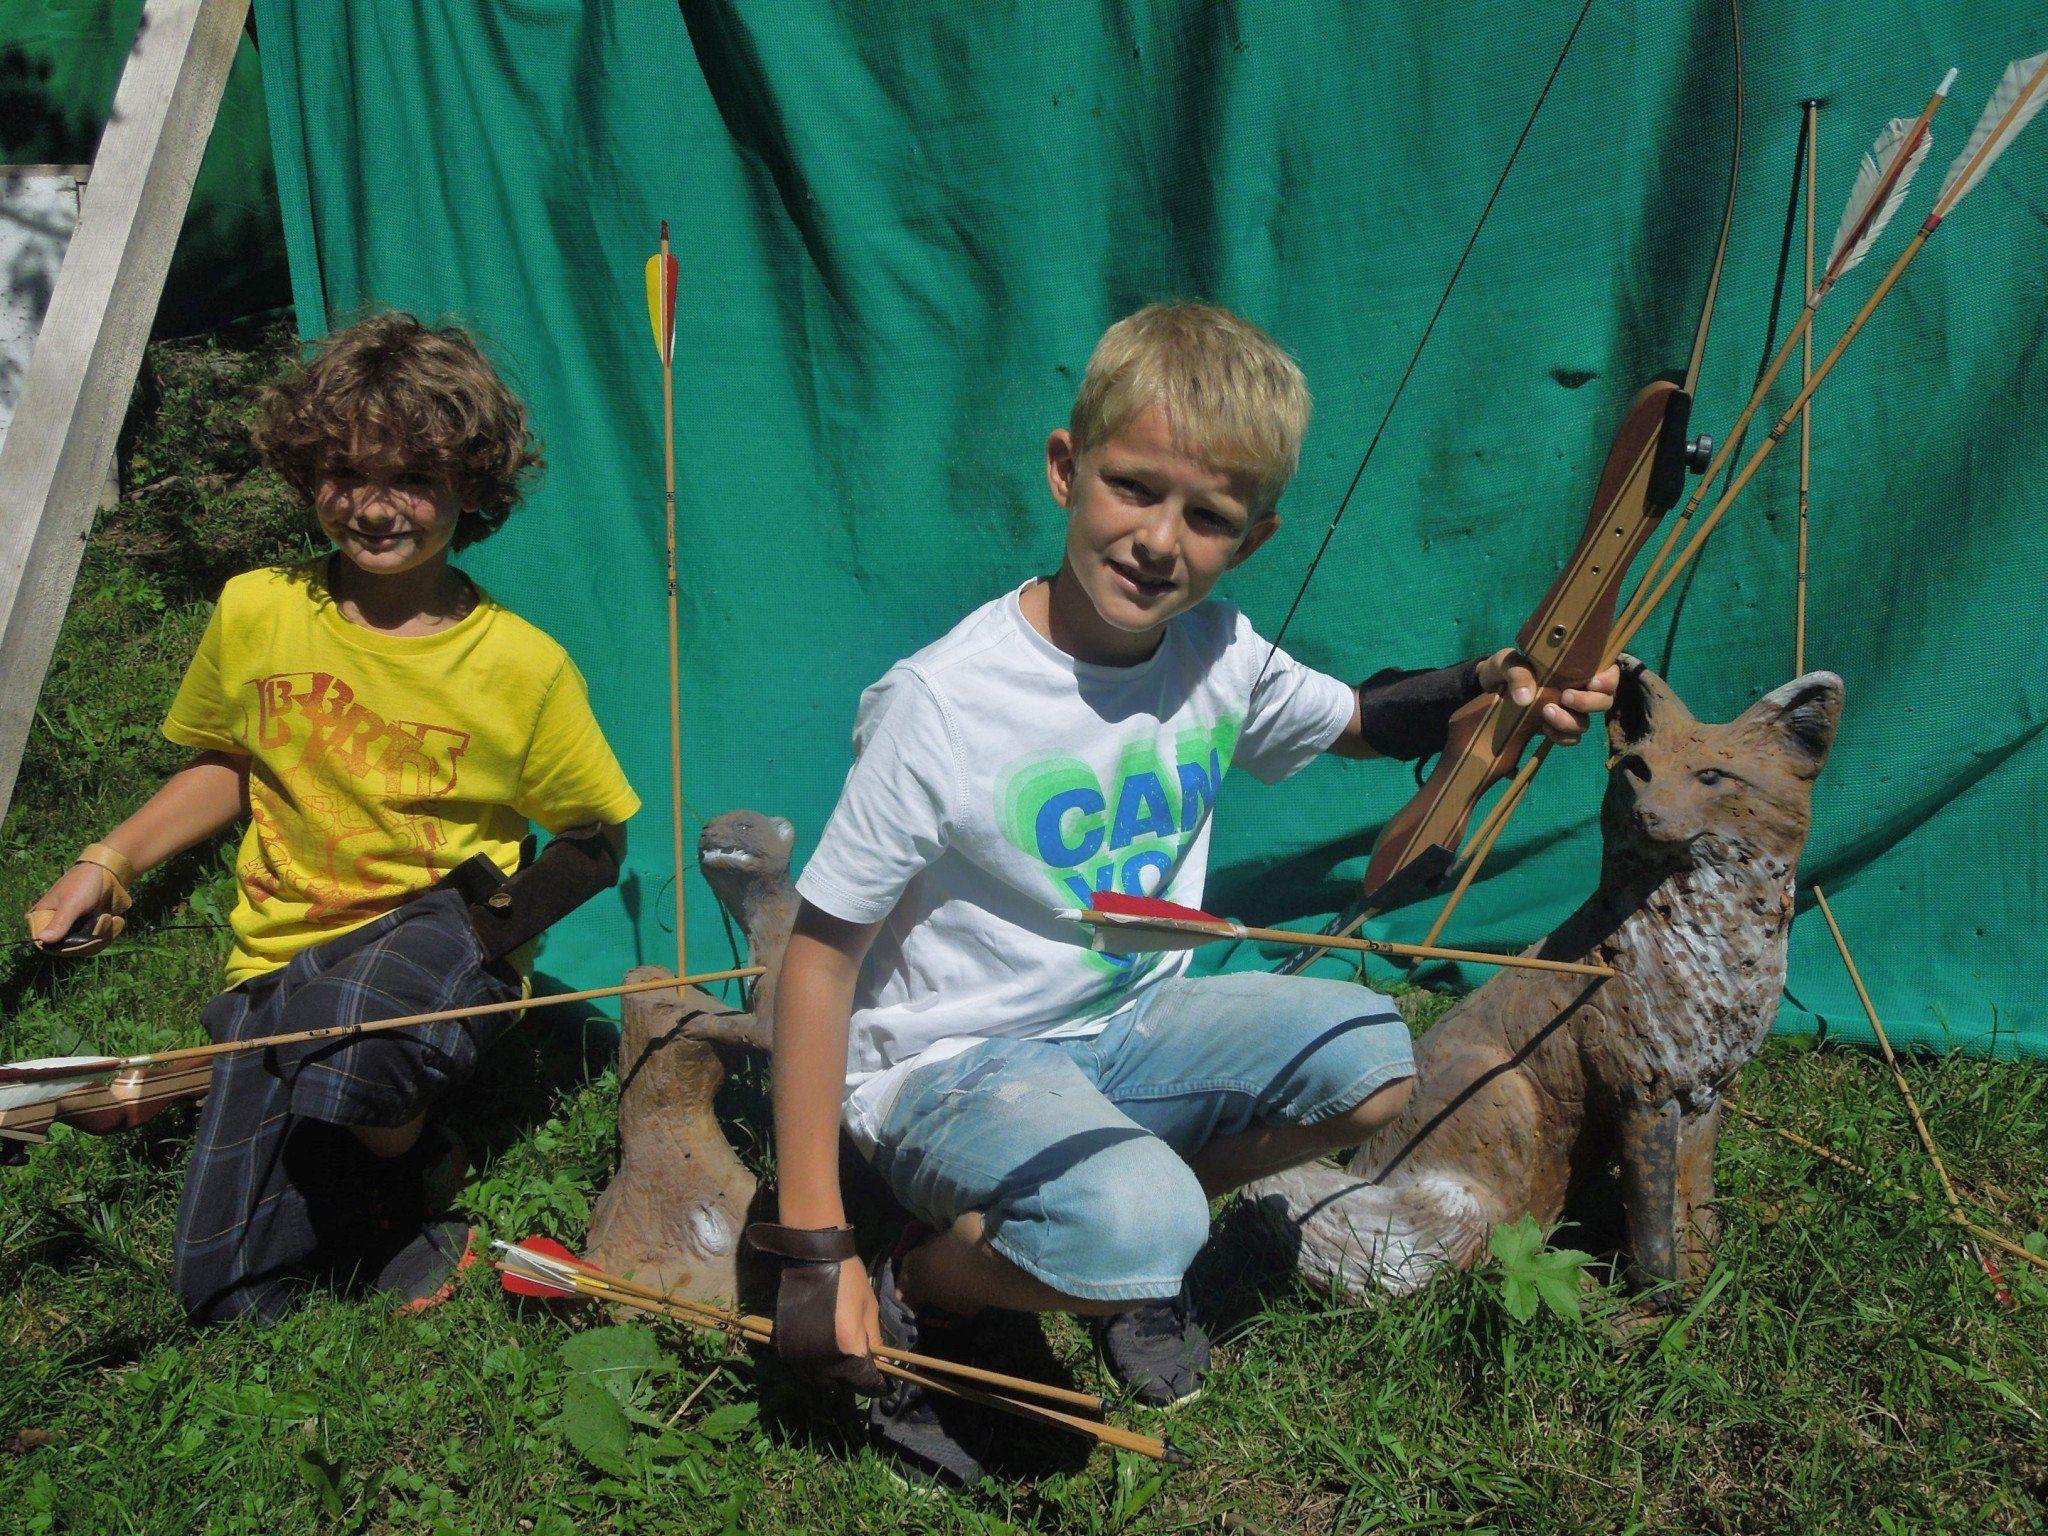 Die Kinderreporter versuchten sich als Bogenschützen und begaben sich auf die neueste Attraktion im Ebnit, den 3 D Bogenparcours.